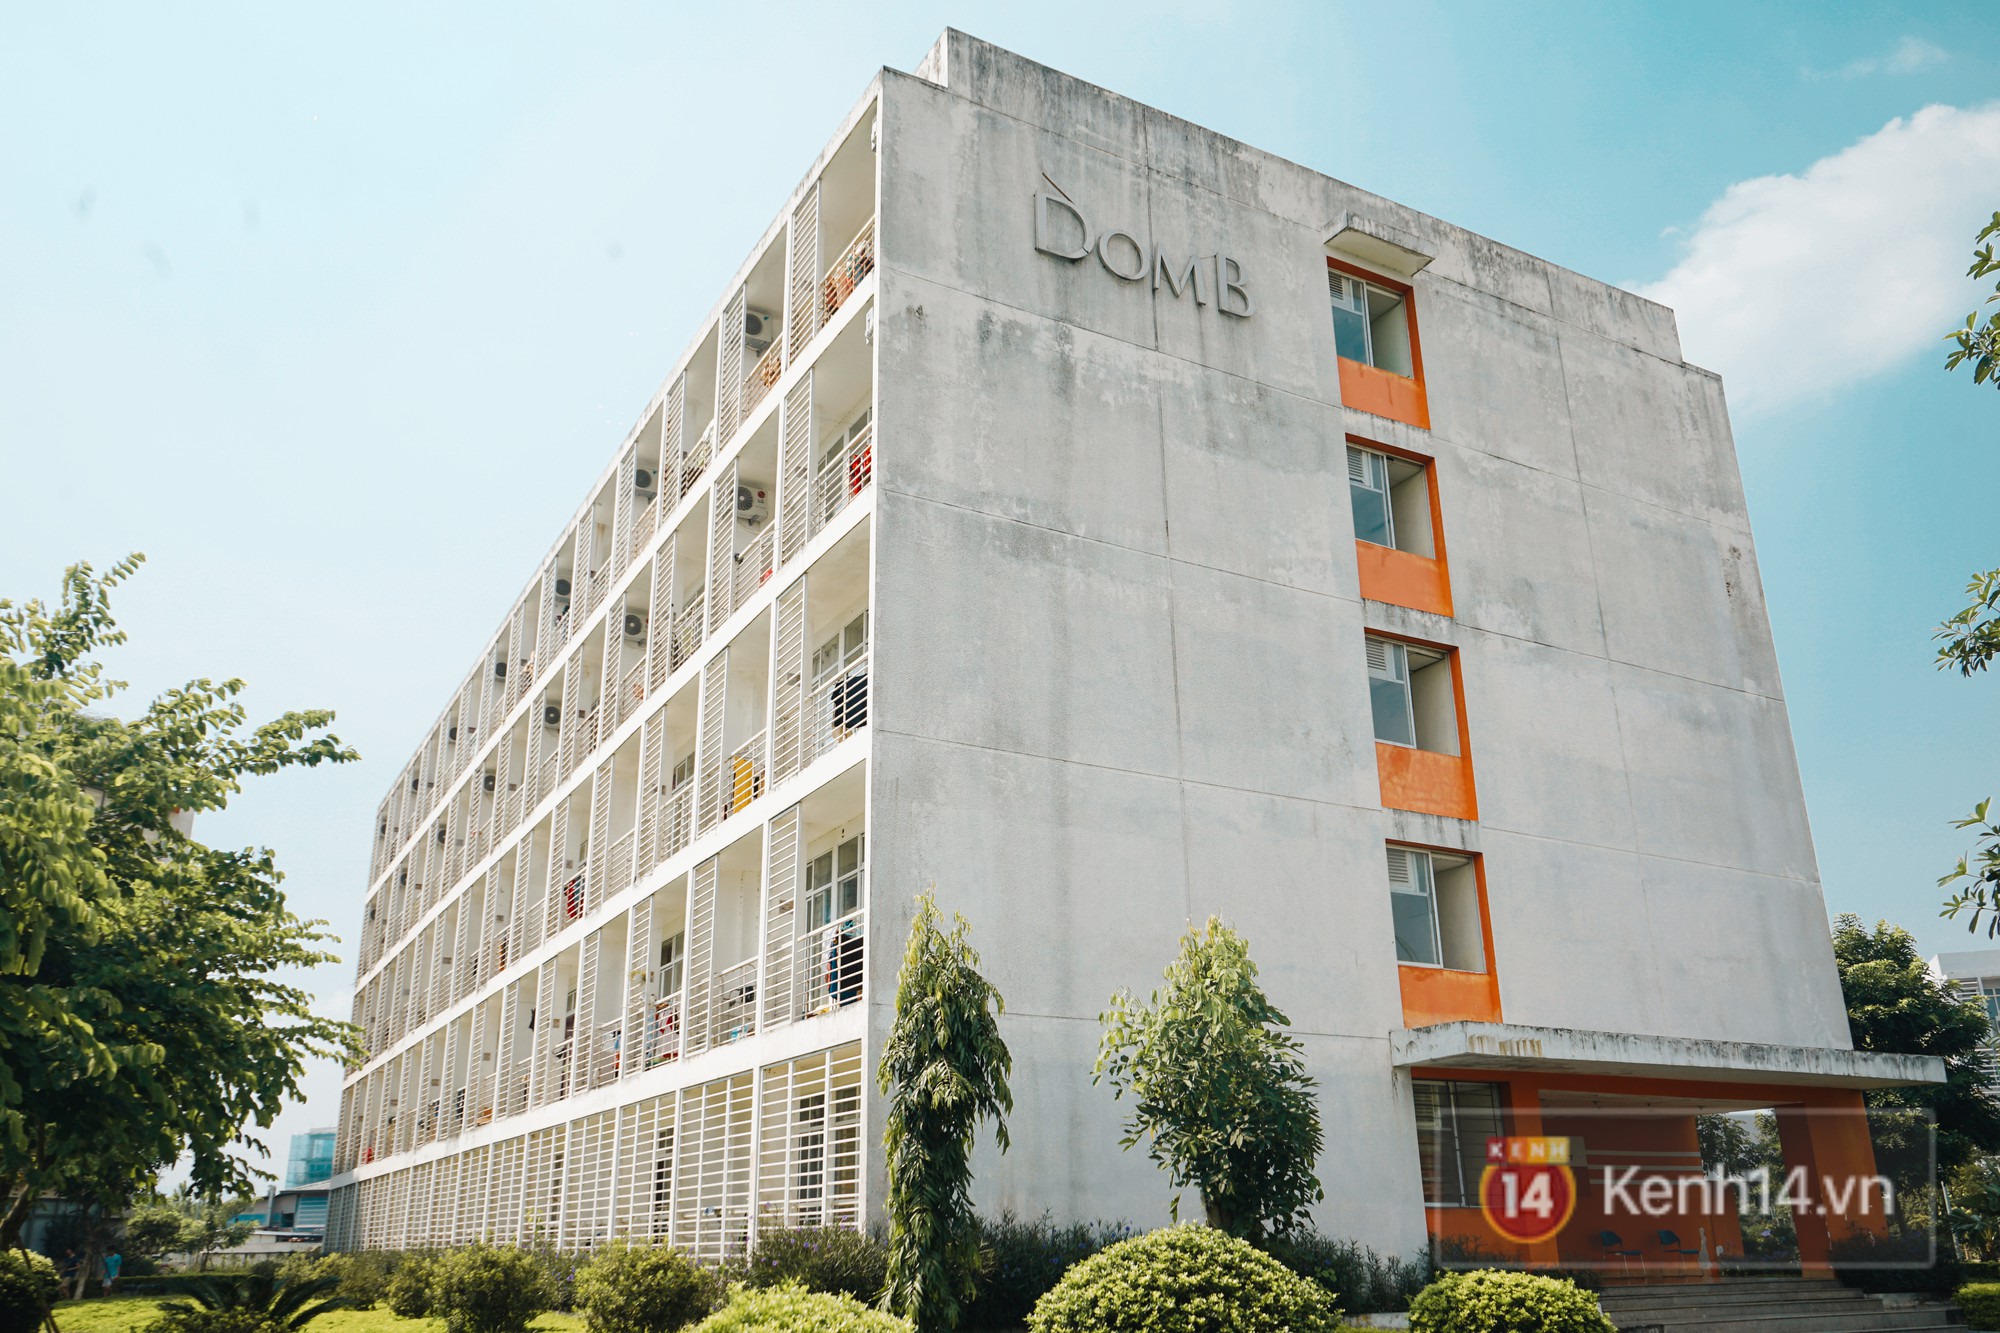 Ghé thăm ký túc xá đại học đẹp nhất nhì Việt Nam, nơi sinh viên hưởng cuộc sống chẳng khác gì ở khách sạn - Ảnh 20.